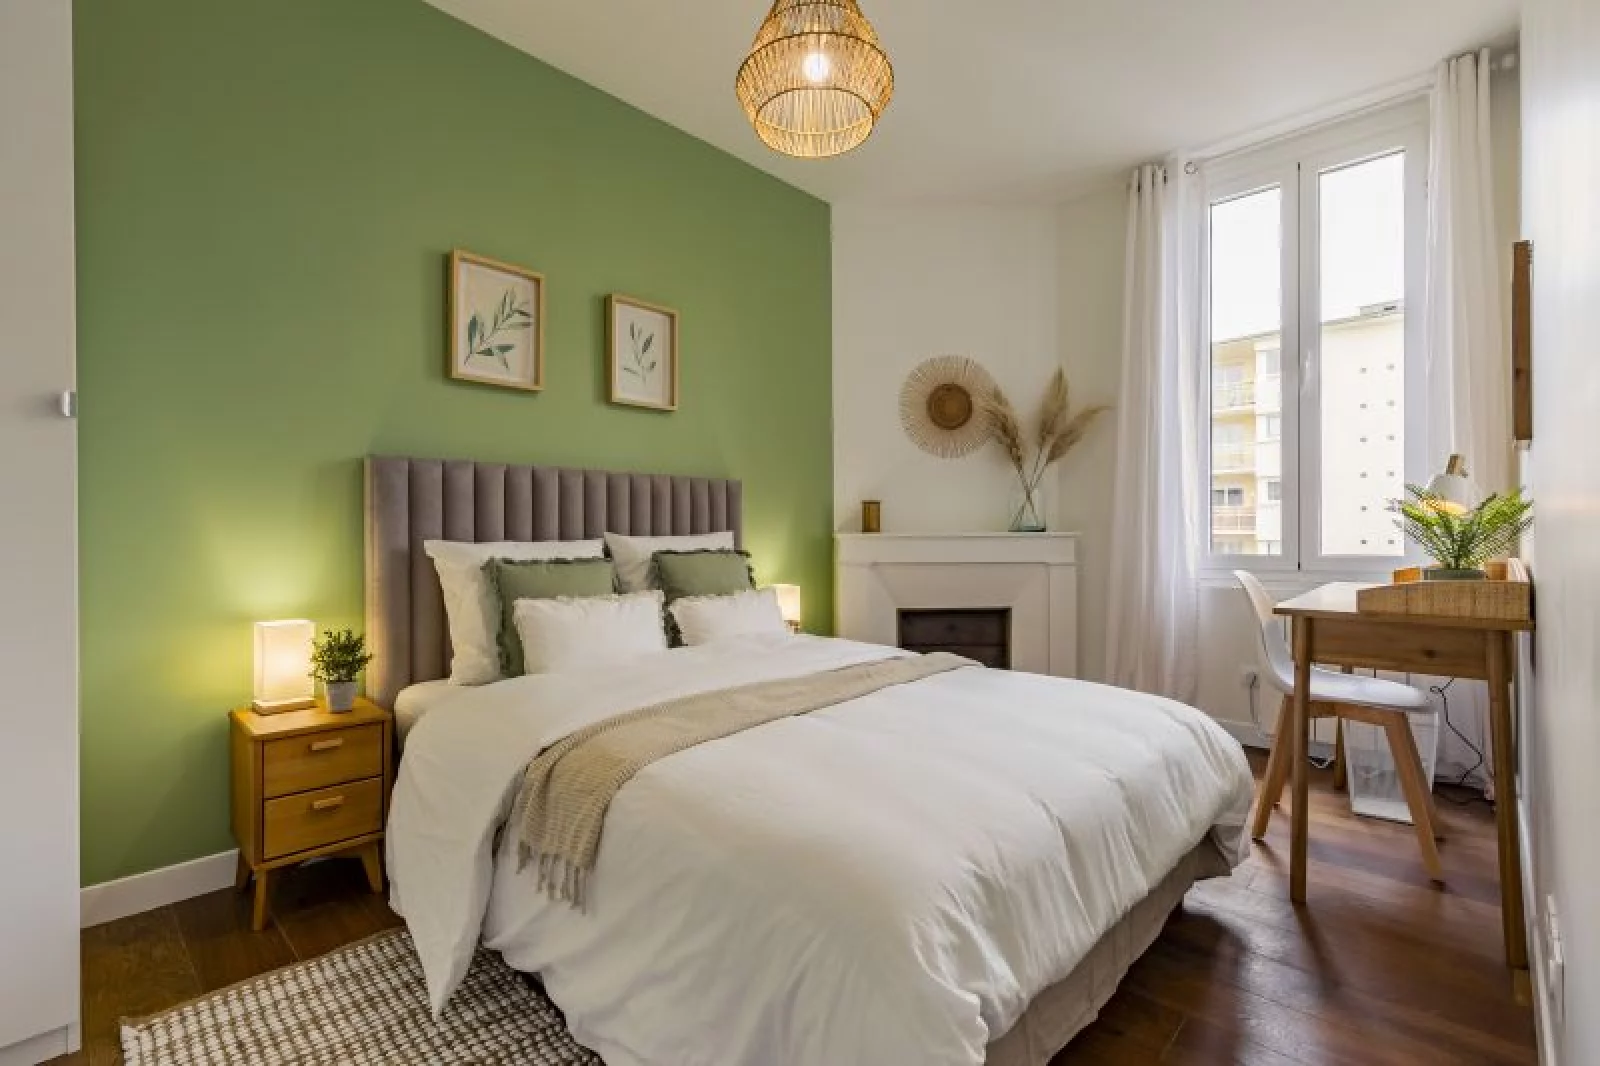 Location appartement meublé 3 pièces 47m² (Bordeaux - Mériadeck)